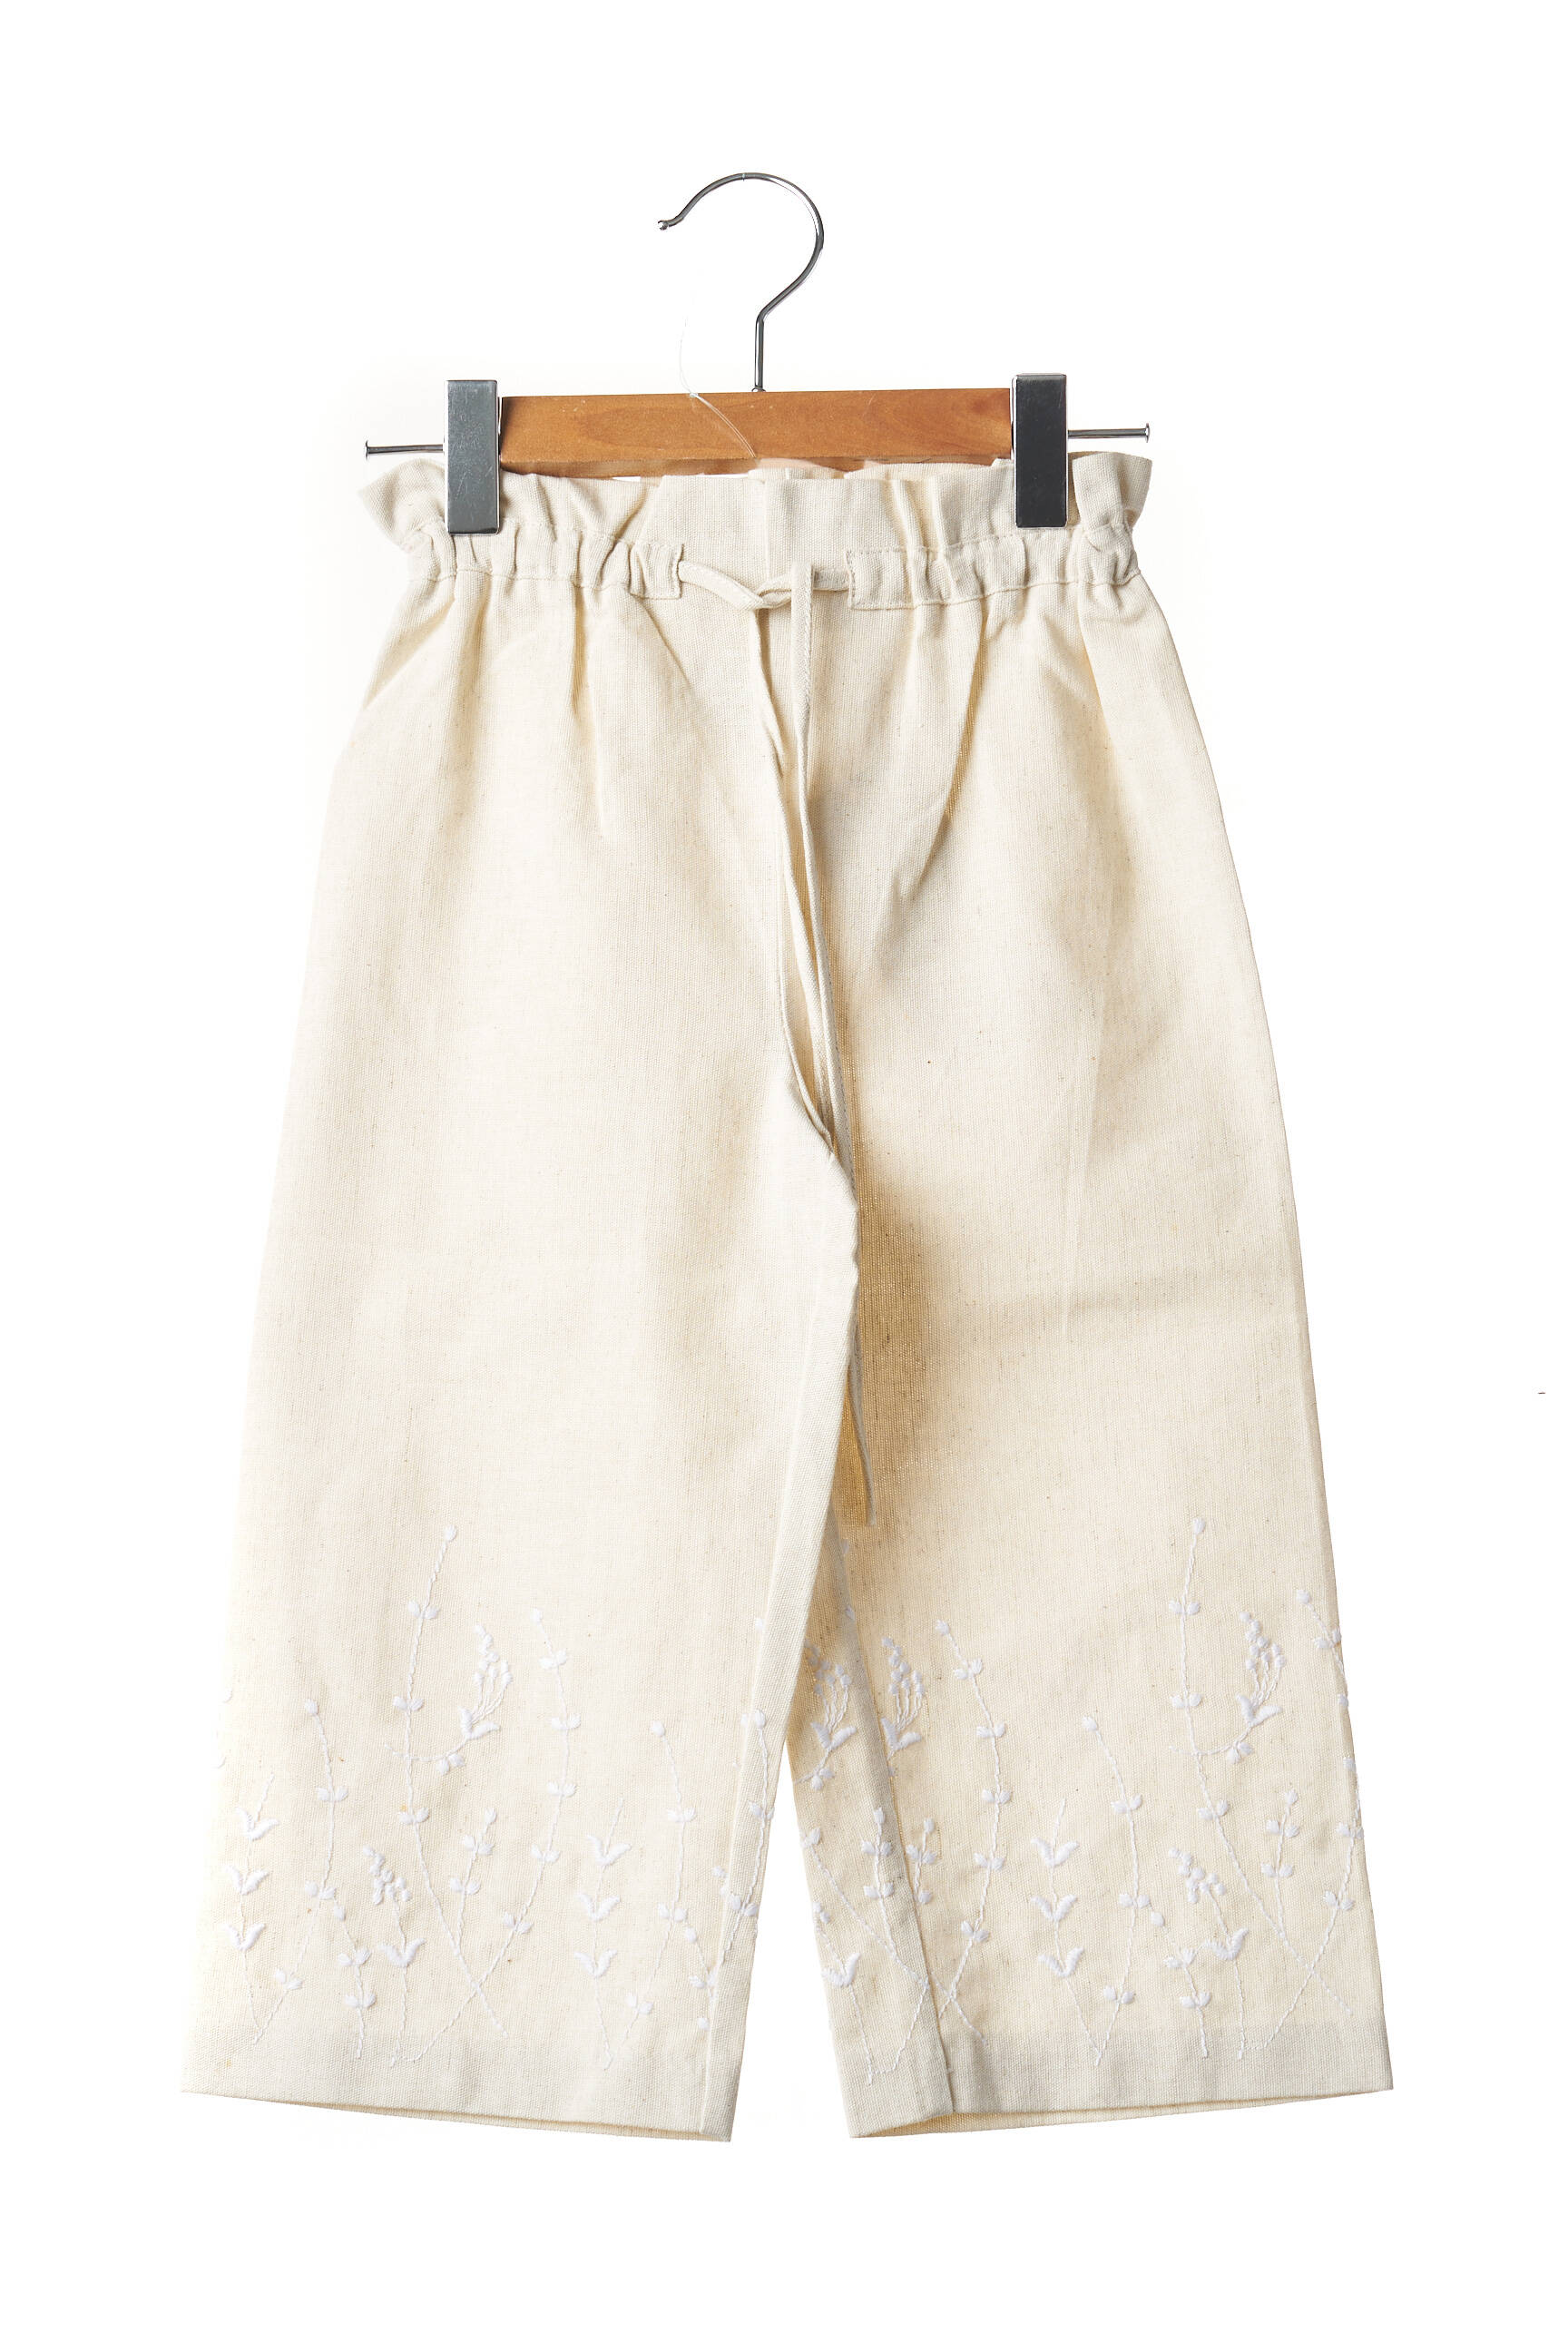 Bfd Creation Pantalons Larges Fille De Couleur Beige 1814288-beige0 - Modz